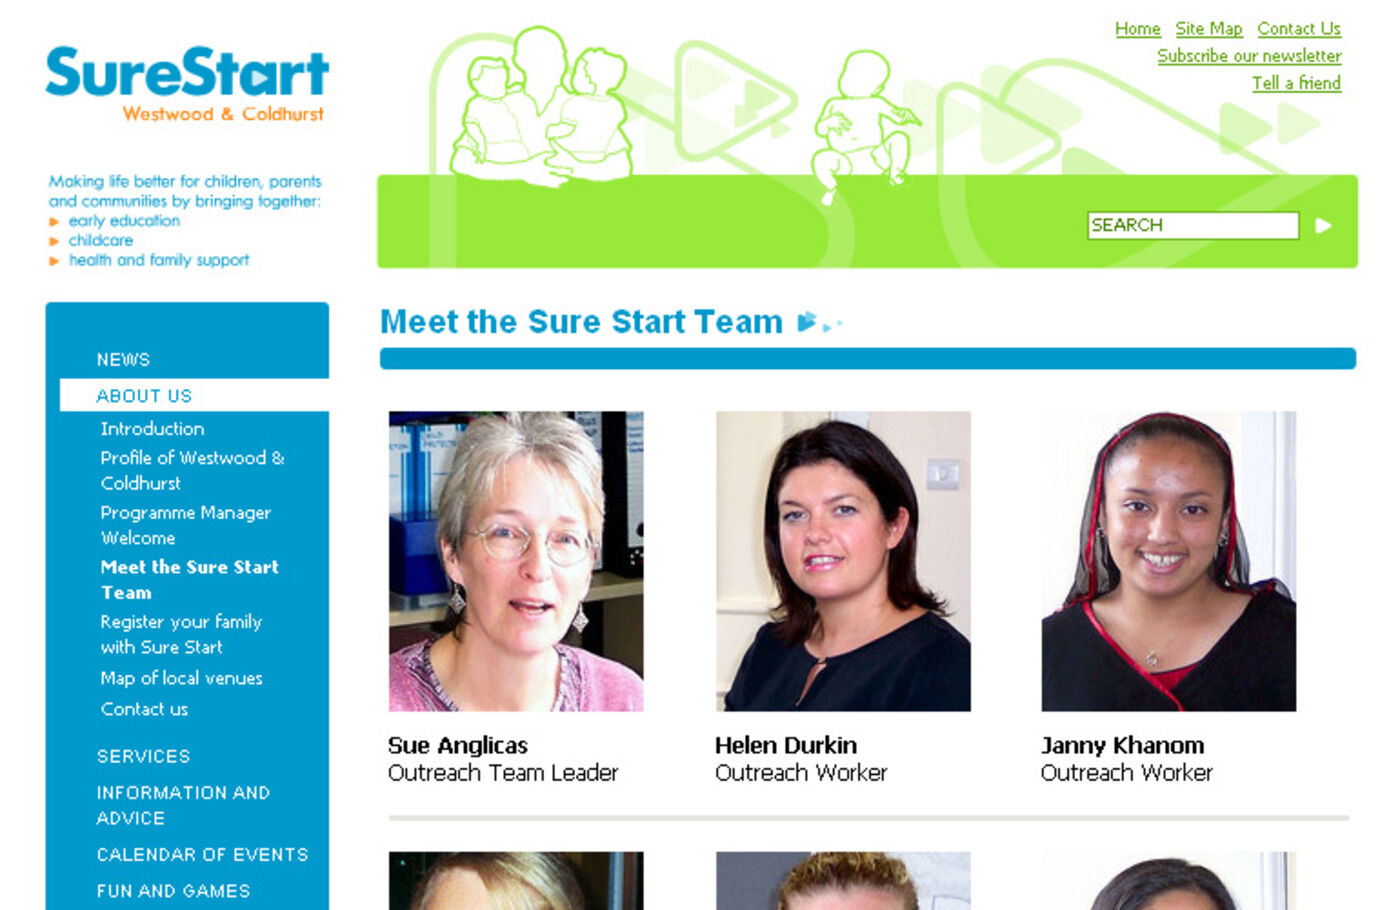 Sure Start Westwood & Coldhurst Meet the team - SureStart